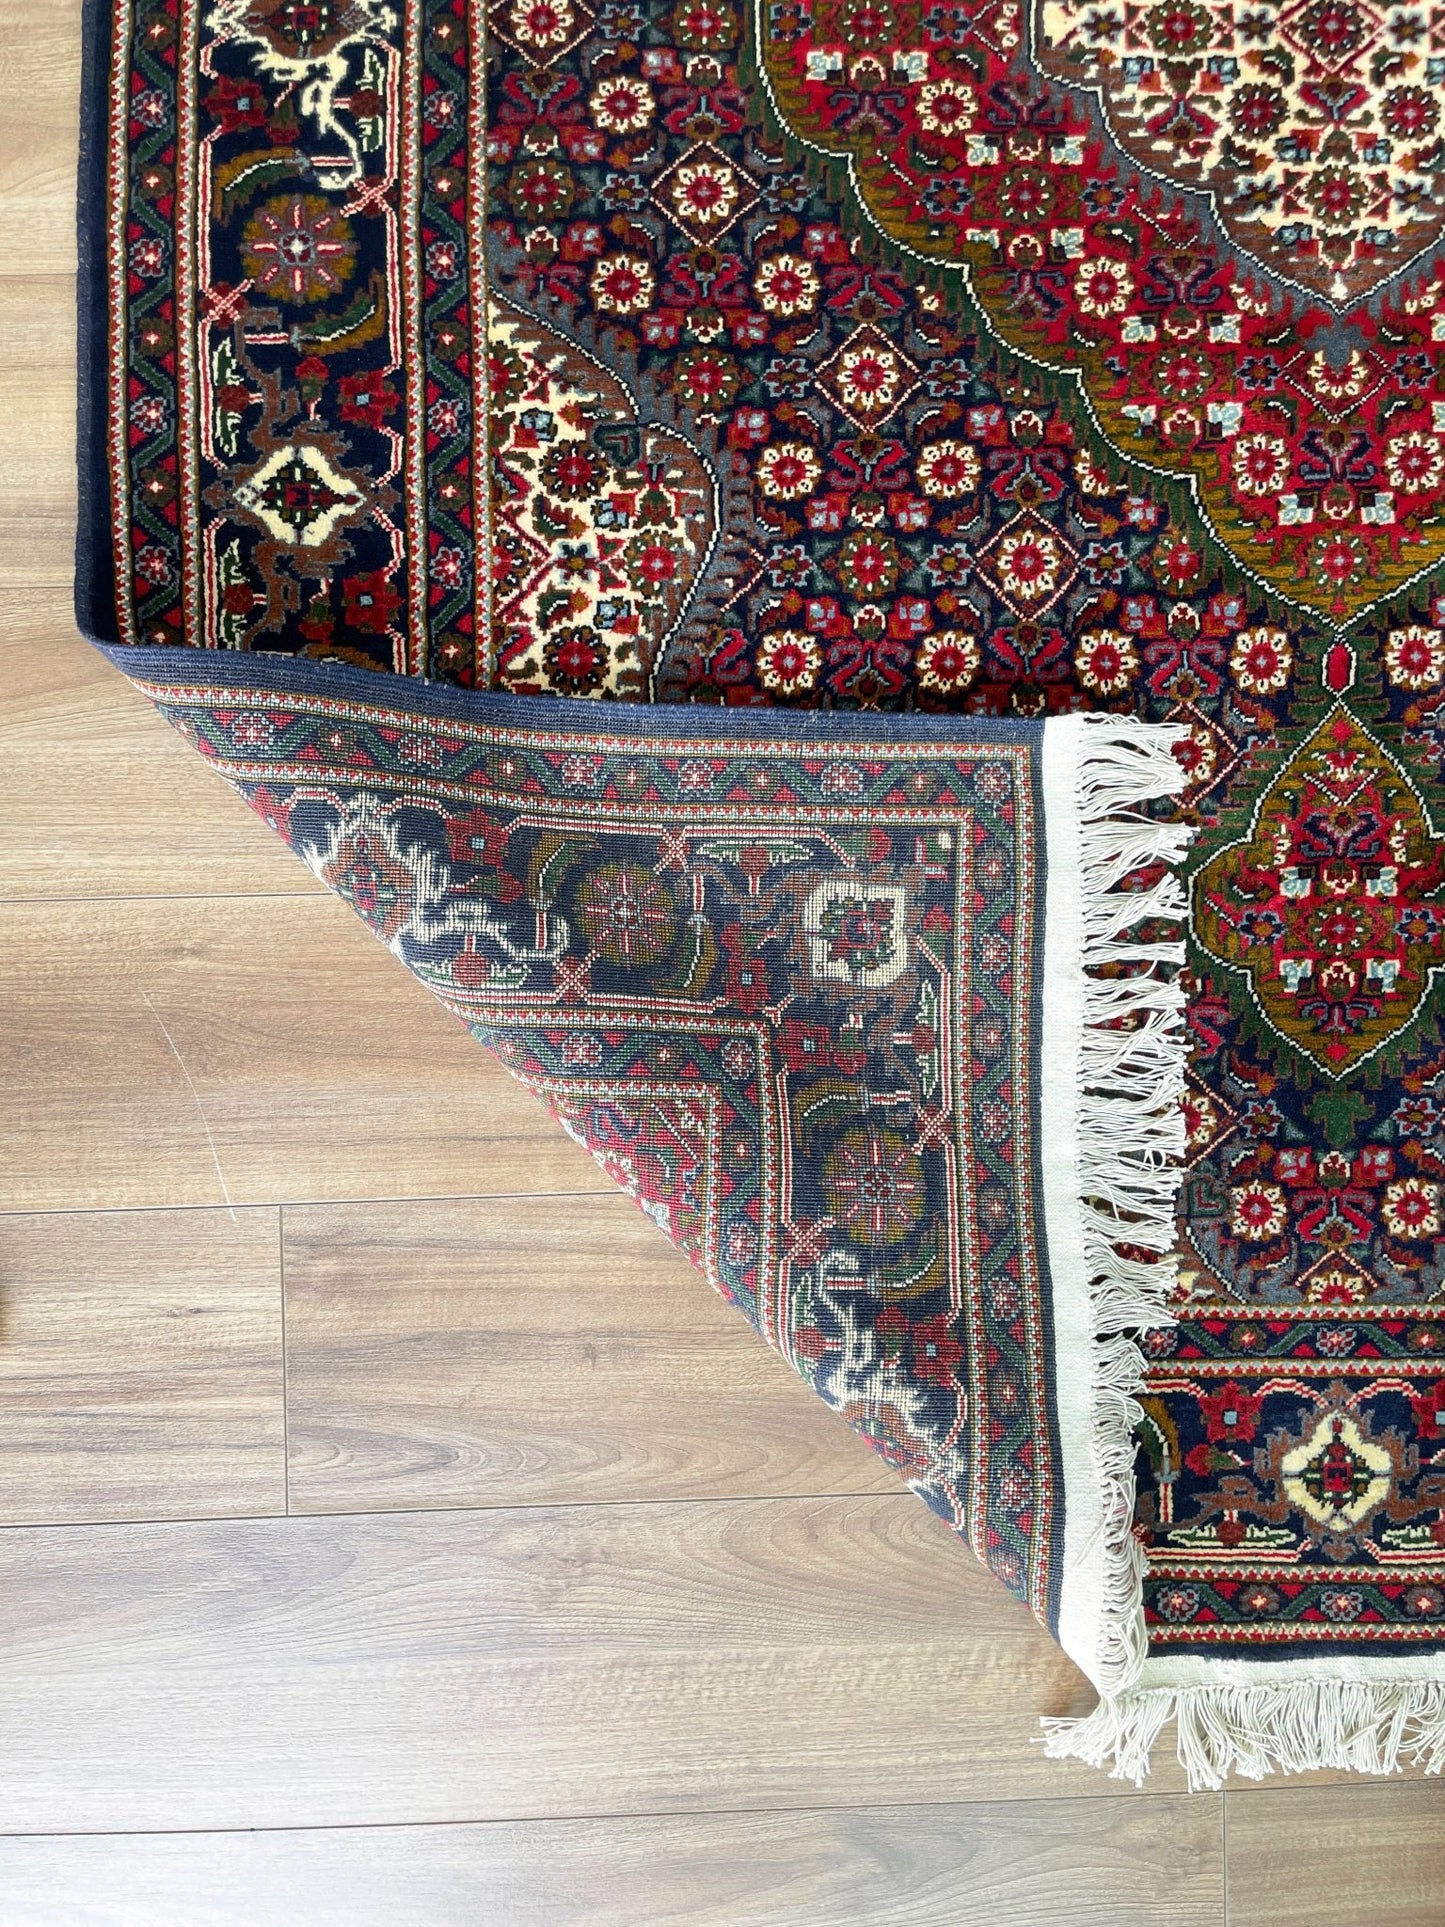 senneh turkmen rug san francisco bay area oriental rug palo alto buy rug berkeley buy rug online california canada toronto